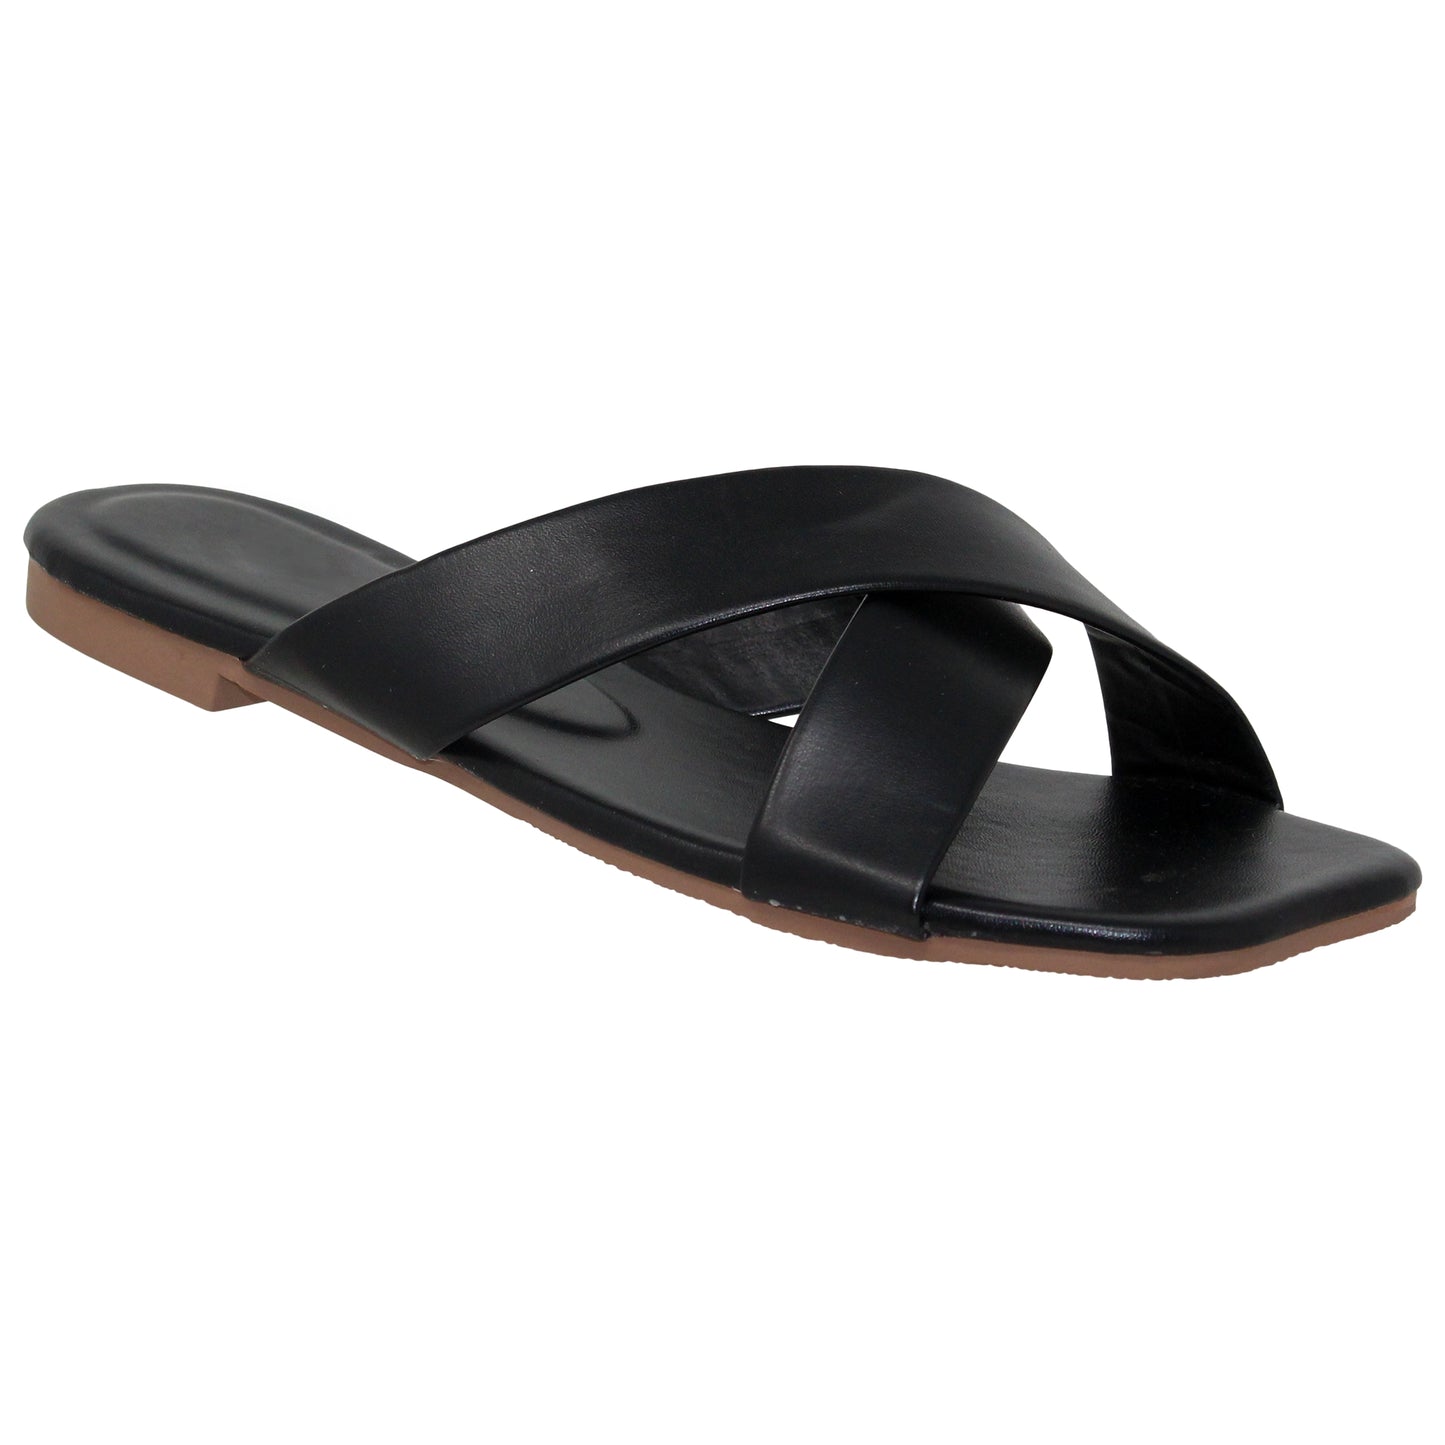 SOBEYO Square Toe Crossband Slide Sandals Beige Black